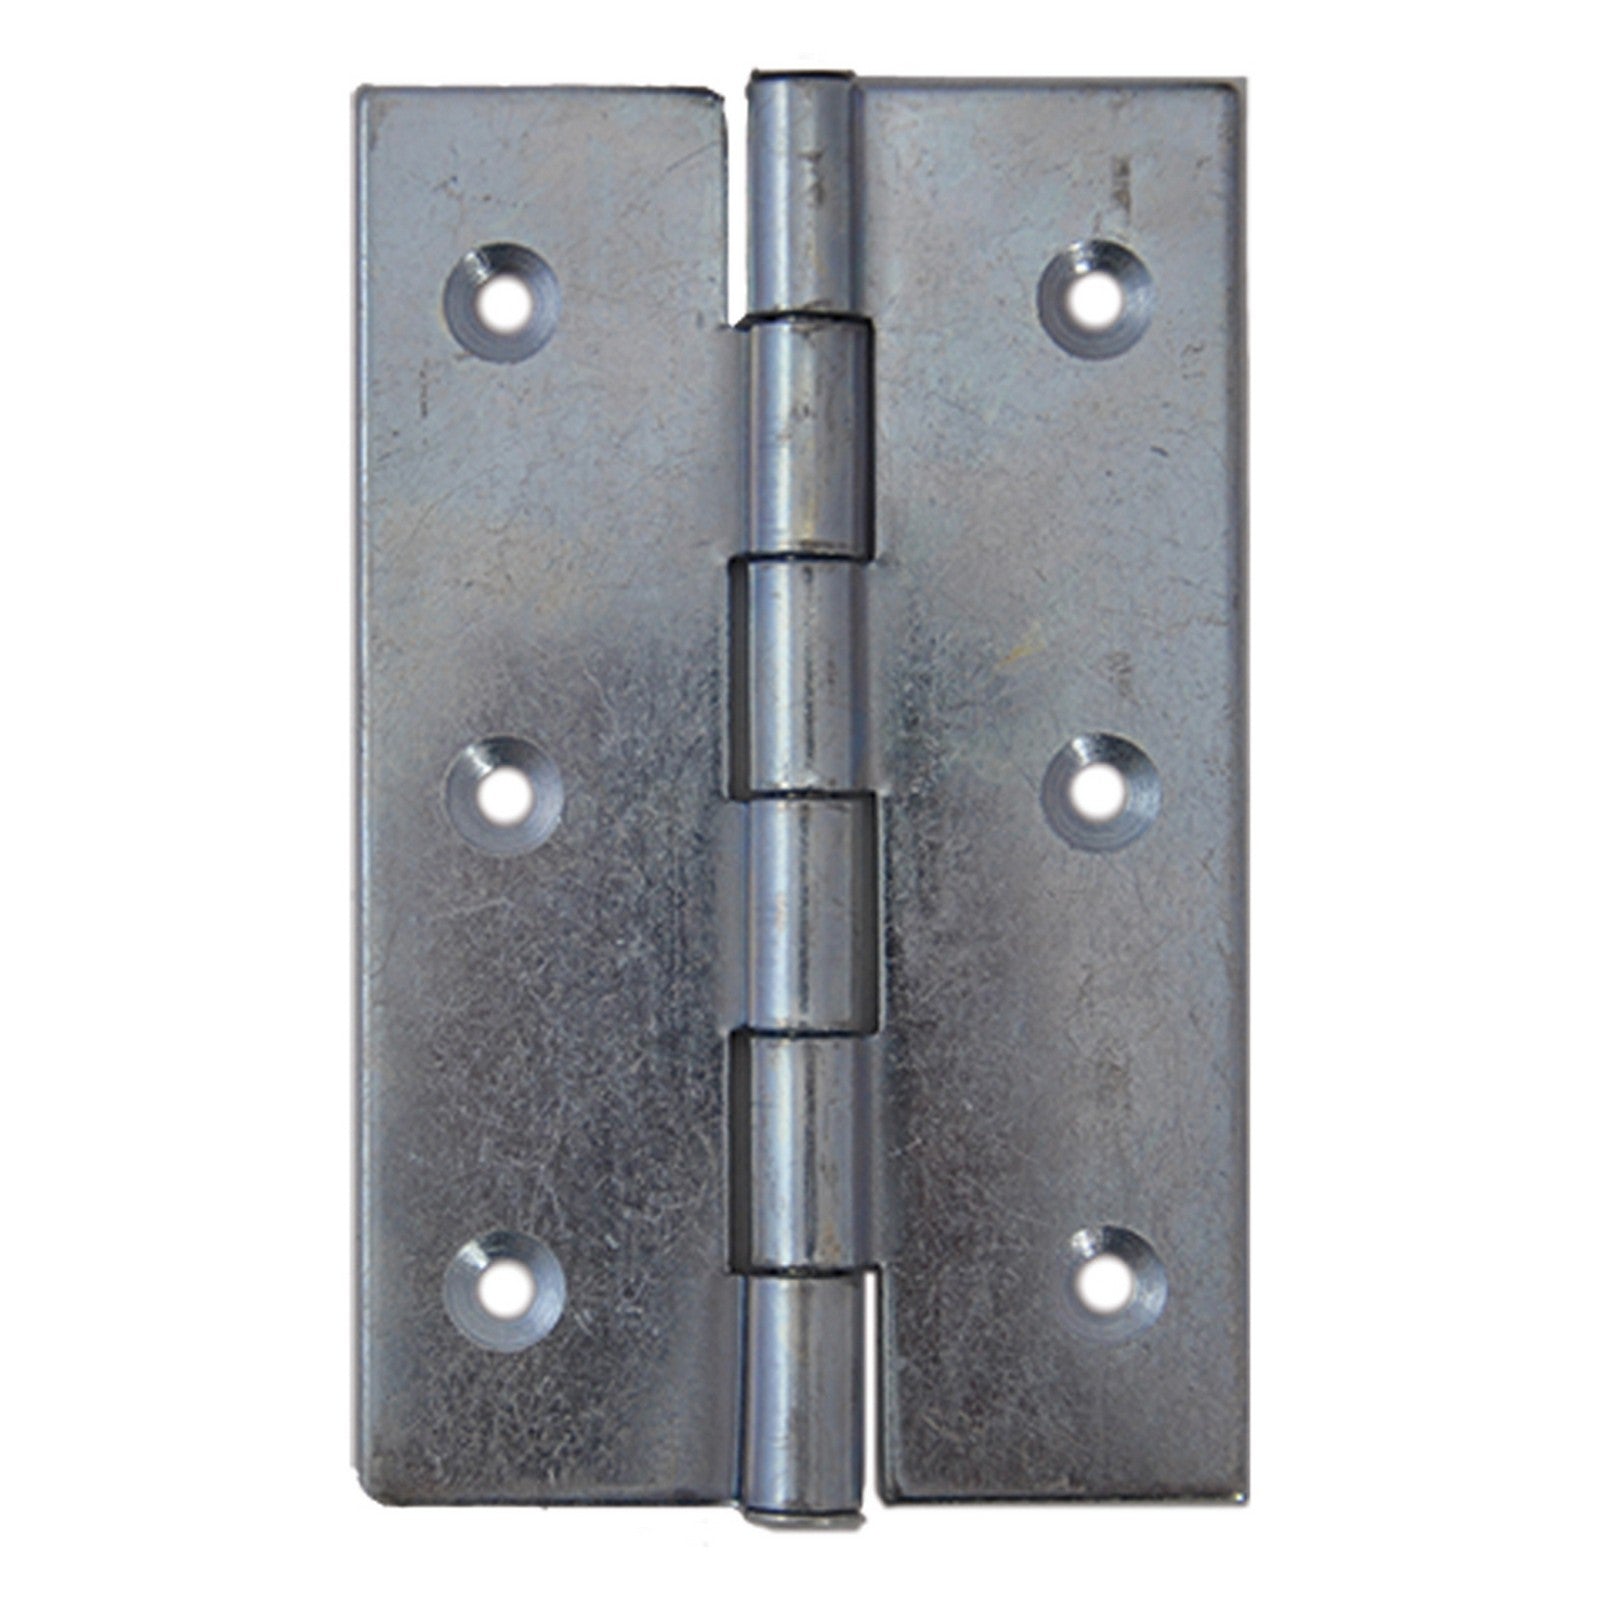 1blister cerniera acciaio zincato art.840 mm 63 x 40 - 4 pezzi cod:ferx.38231nlm